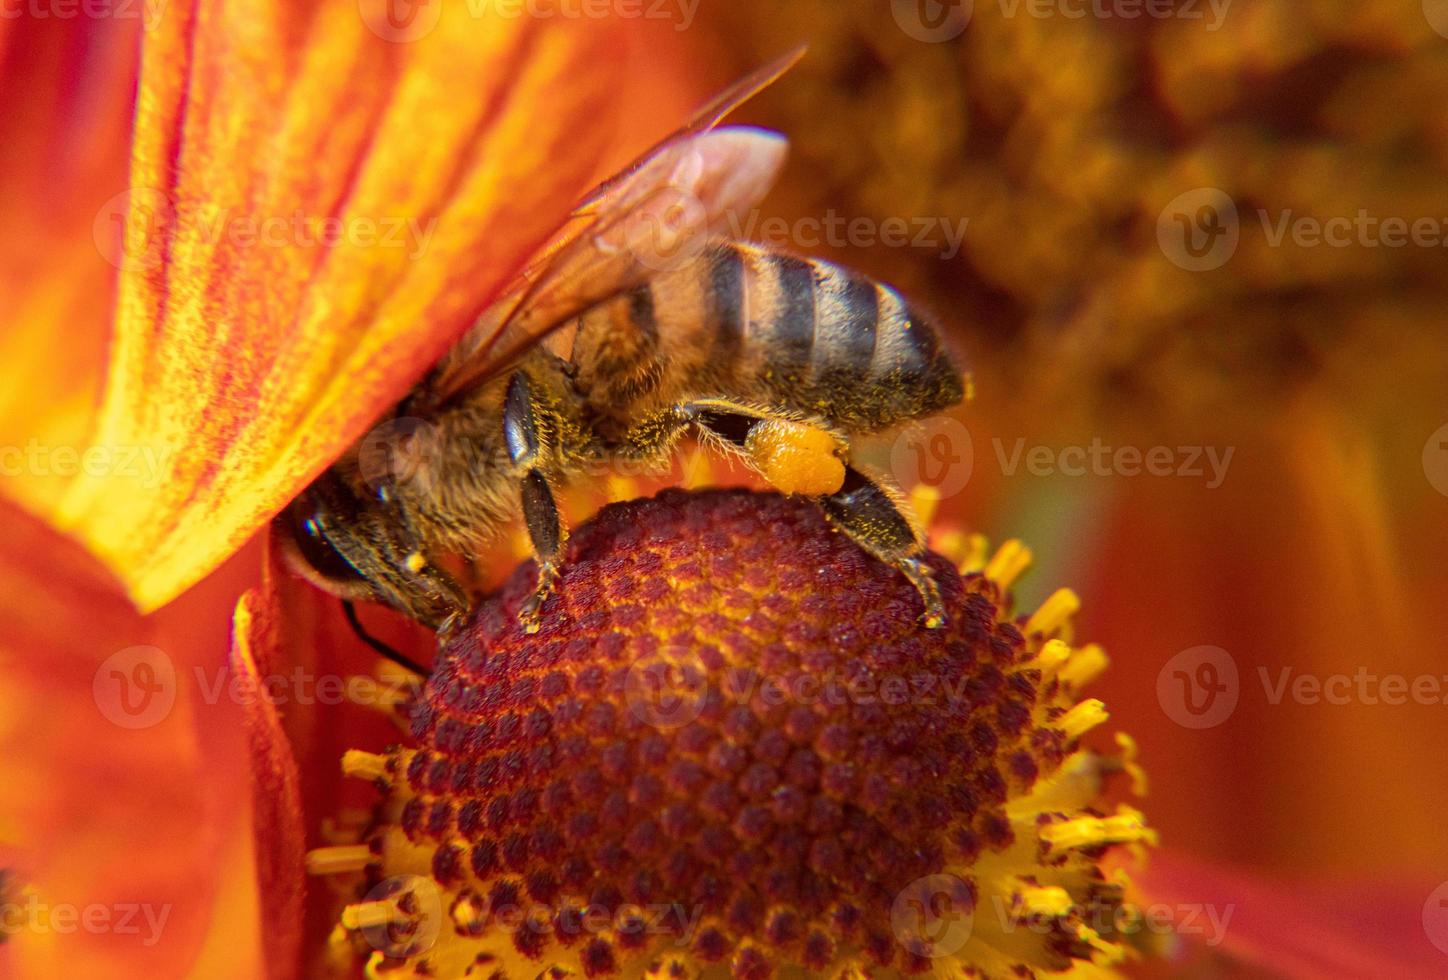 abeille recouverte de nectar de boisson au pollen jaune, fleur pollinisatrice. printemps floral naturel inspirant ou fond de jardin en fleurs d'été. vie des insectes, macro extrême gros plan mise au point sélective photo